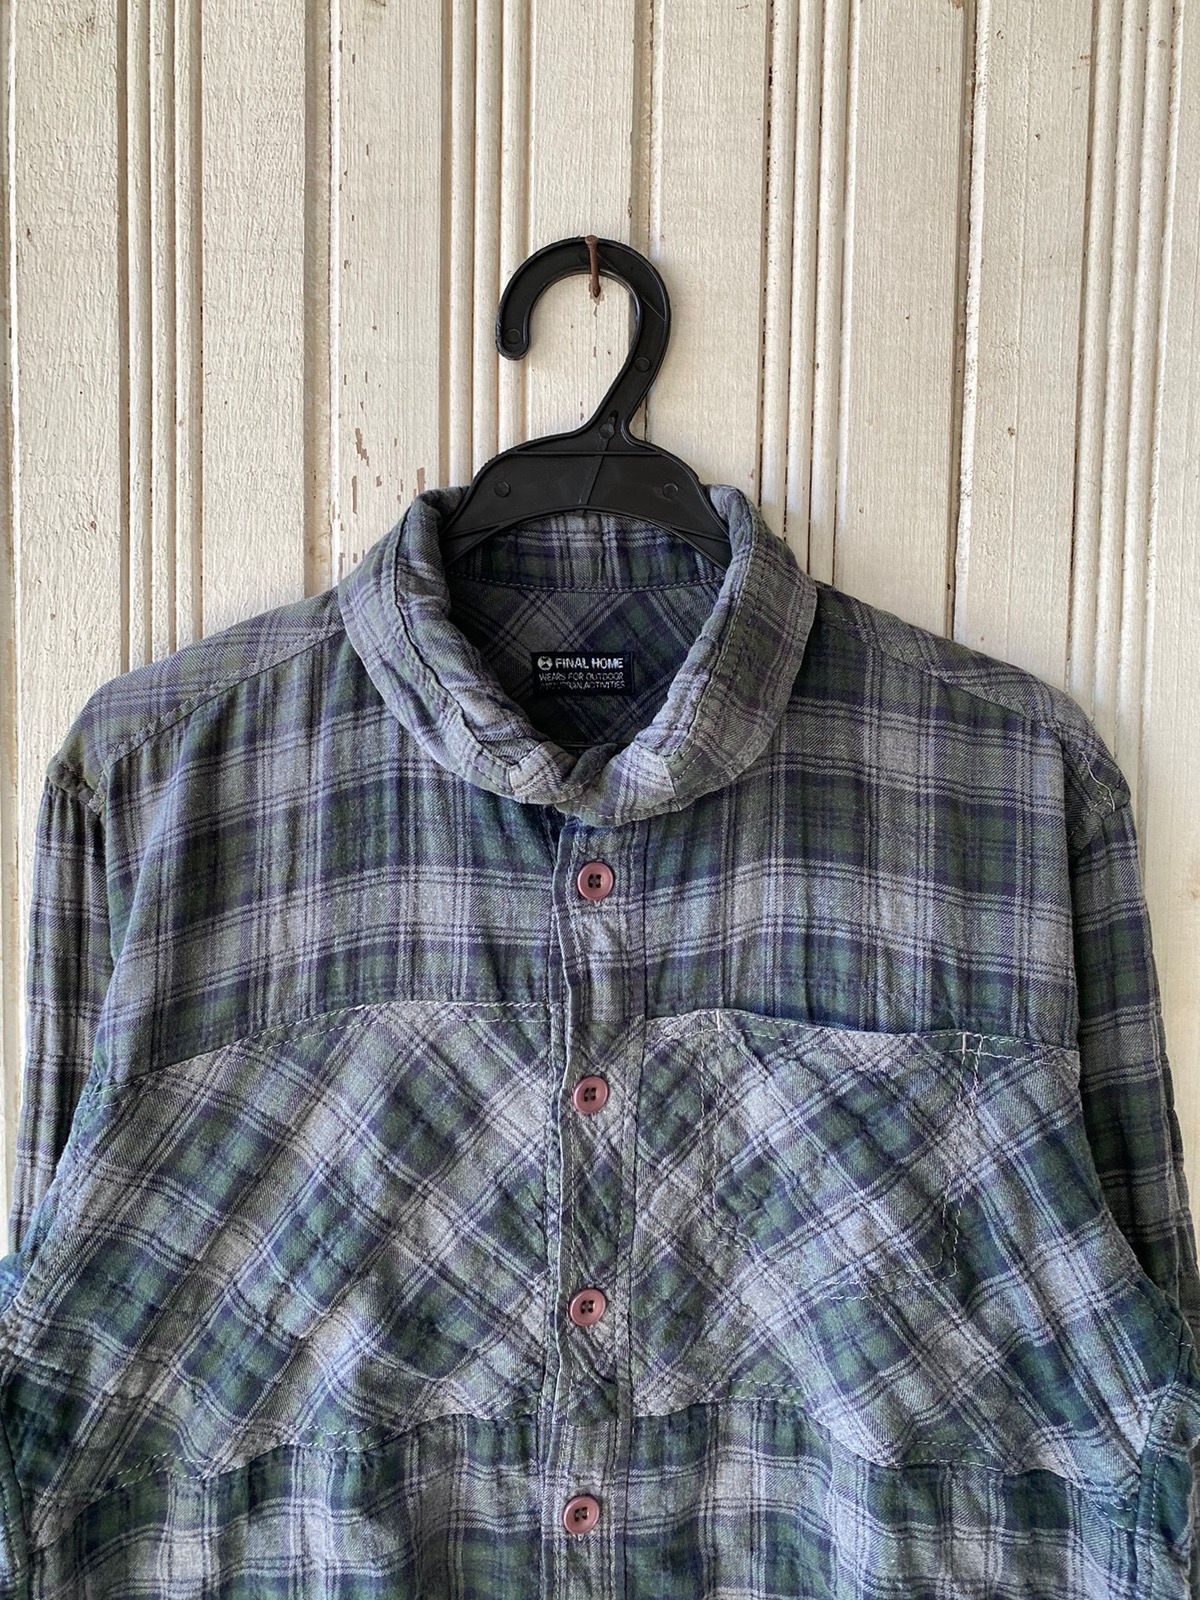 Vintage Vintage Final Home Flannel Shirt Button Ups Size US S / EU 44-46 / 1 - 3 Thumbnail